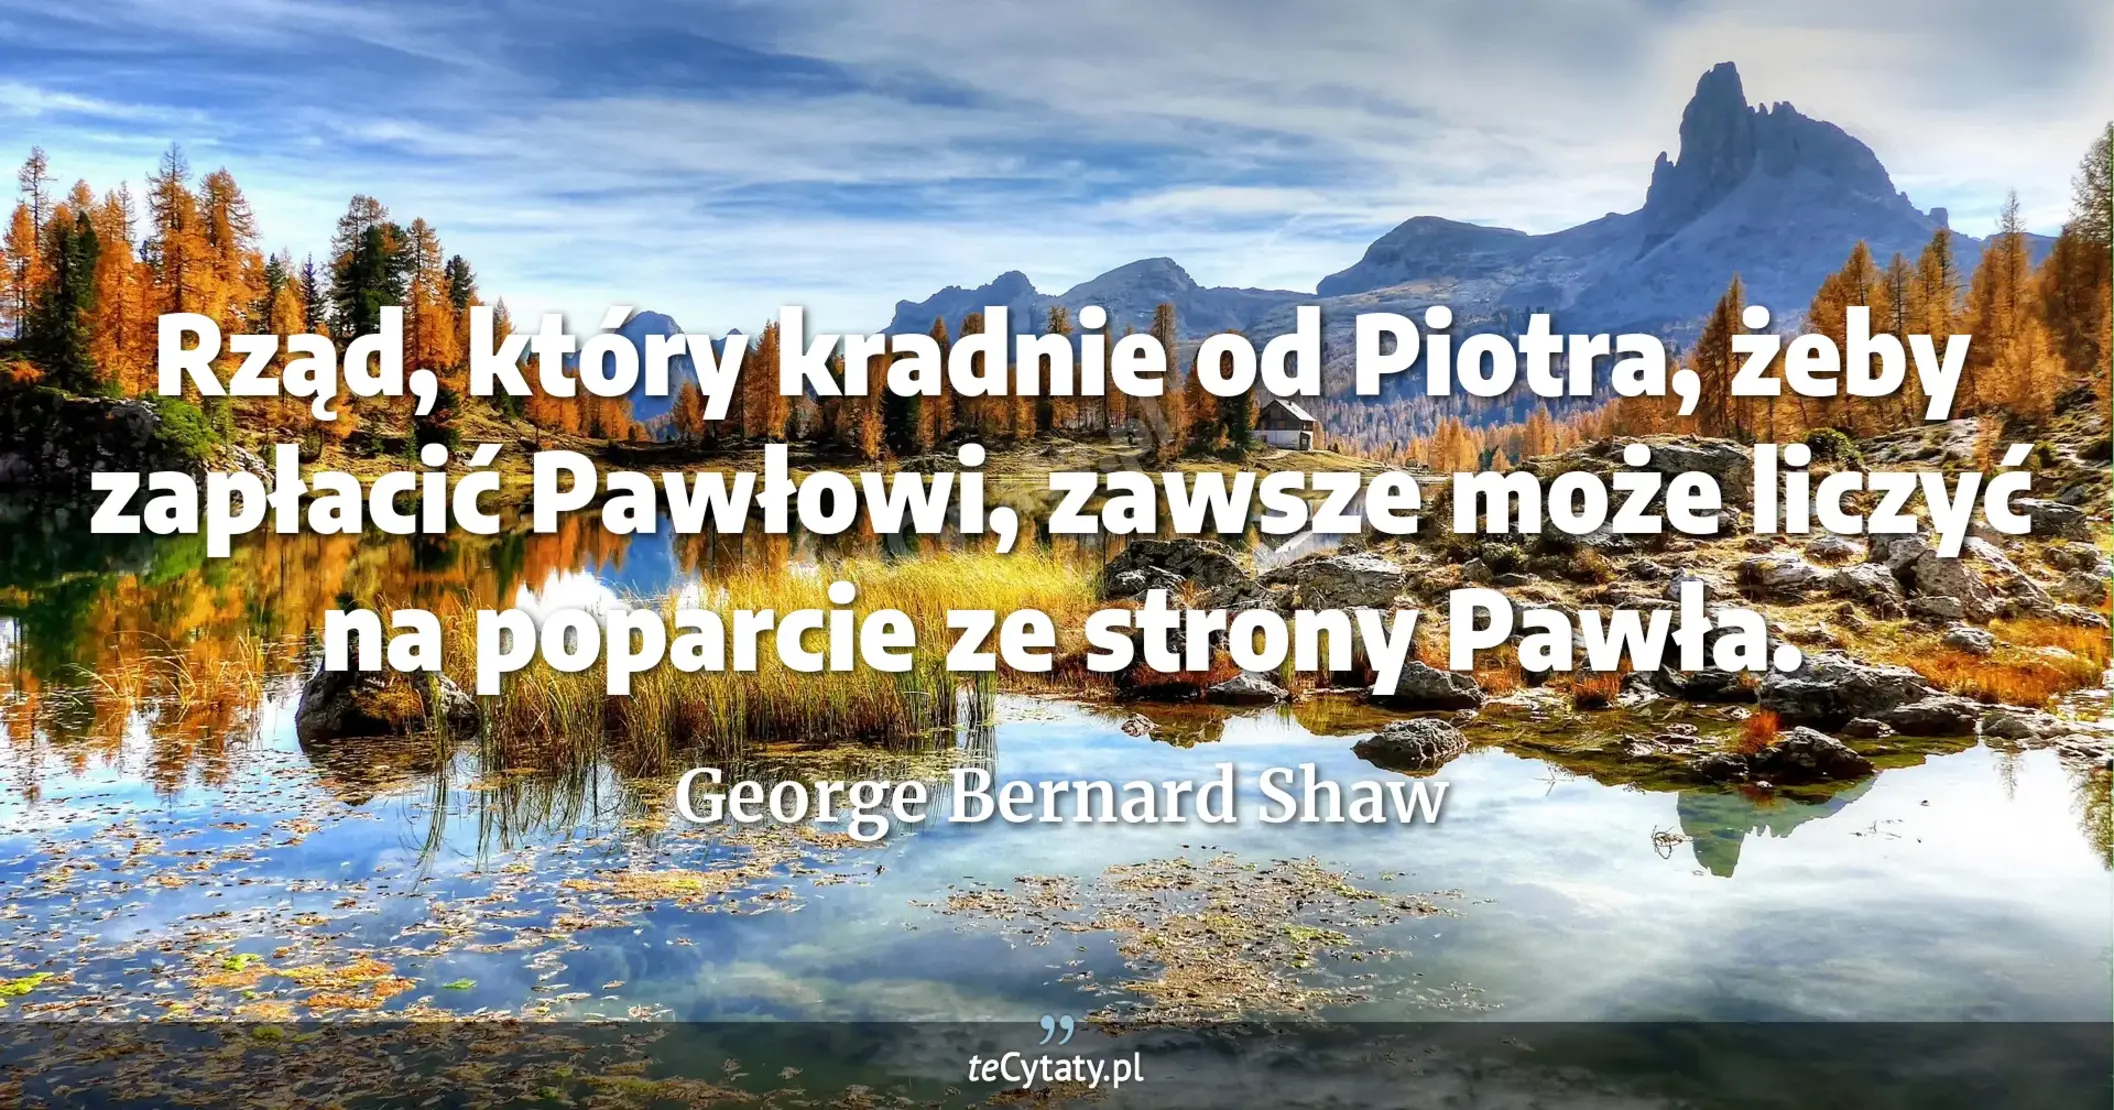 Rząd, który kradnie od Piotra, żeby zapłacić Pawłowi, zawsze może liczyć na poparcie ze strony Pawła. - George Bernard Shaw